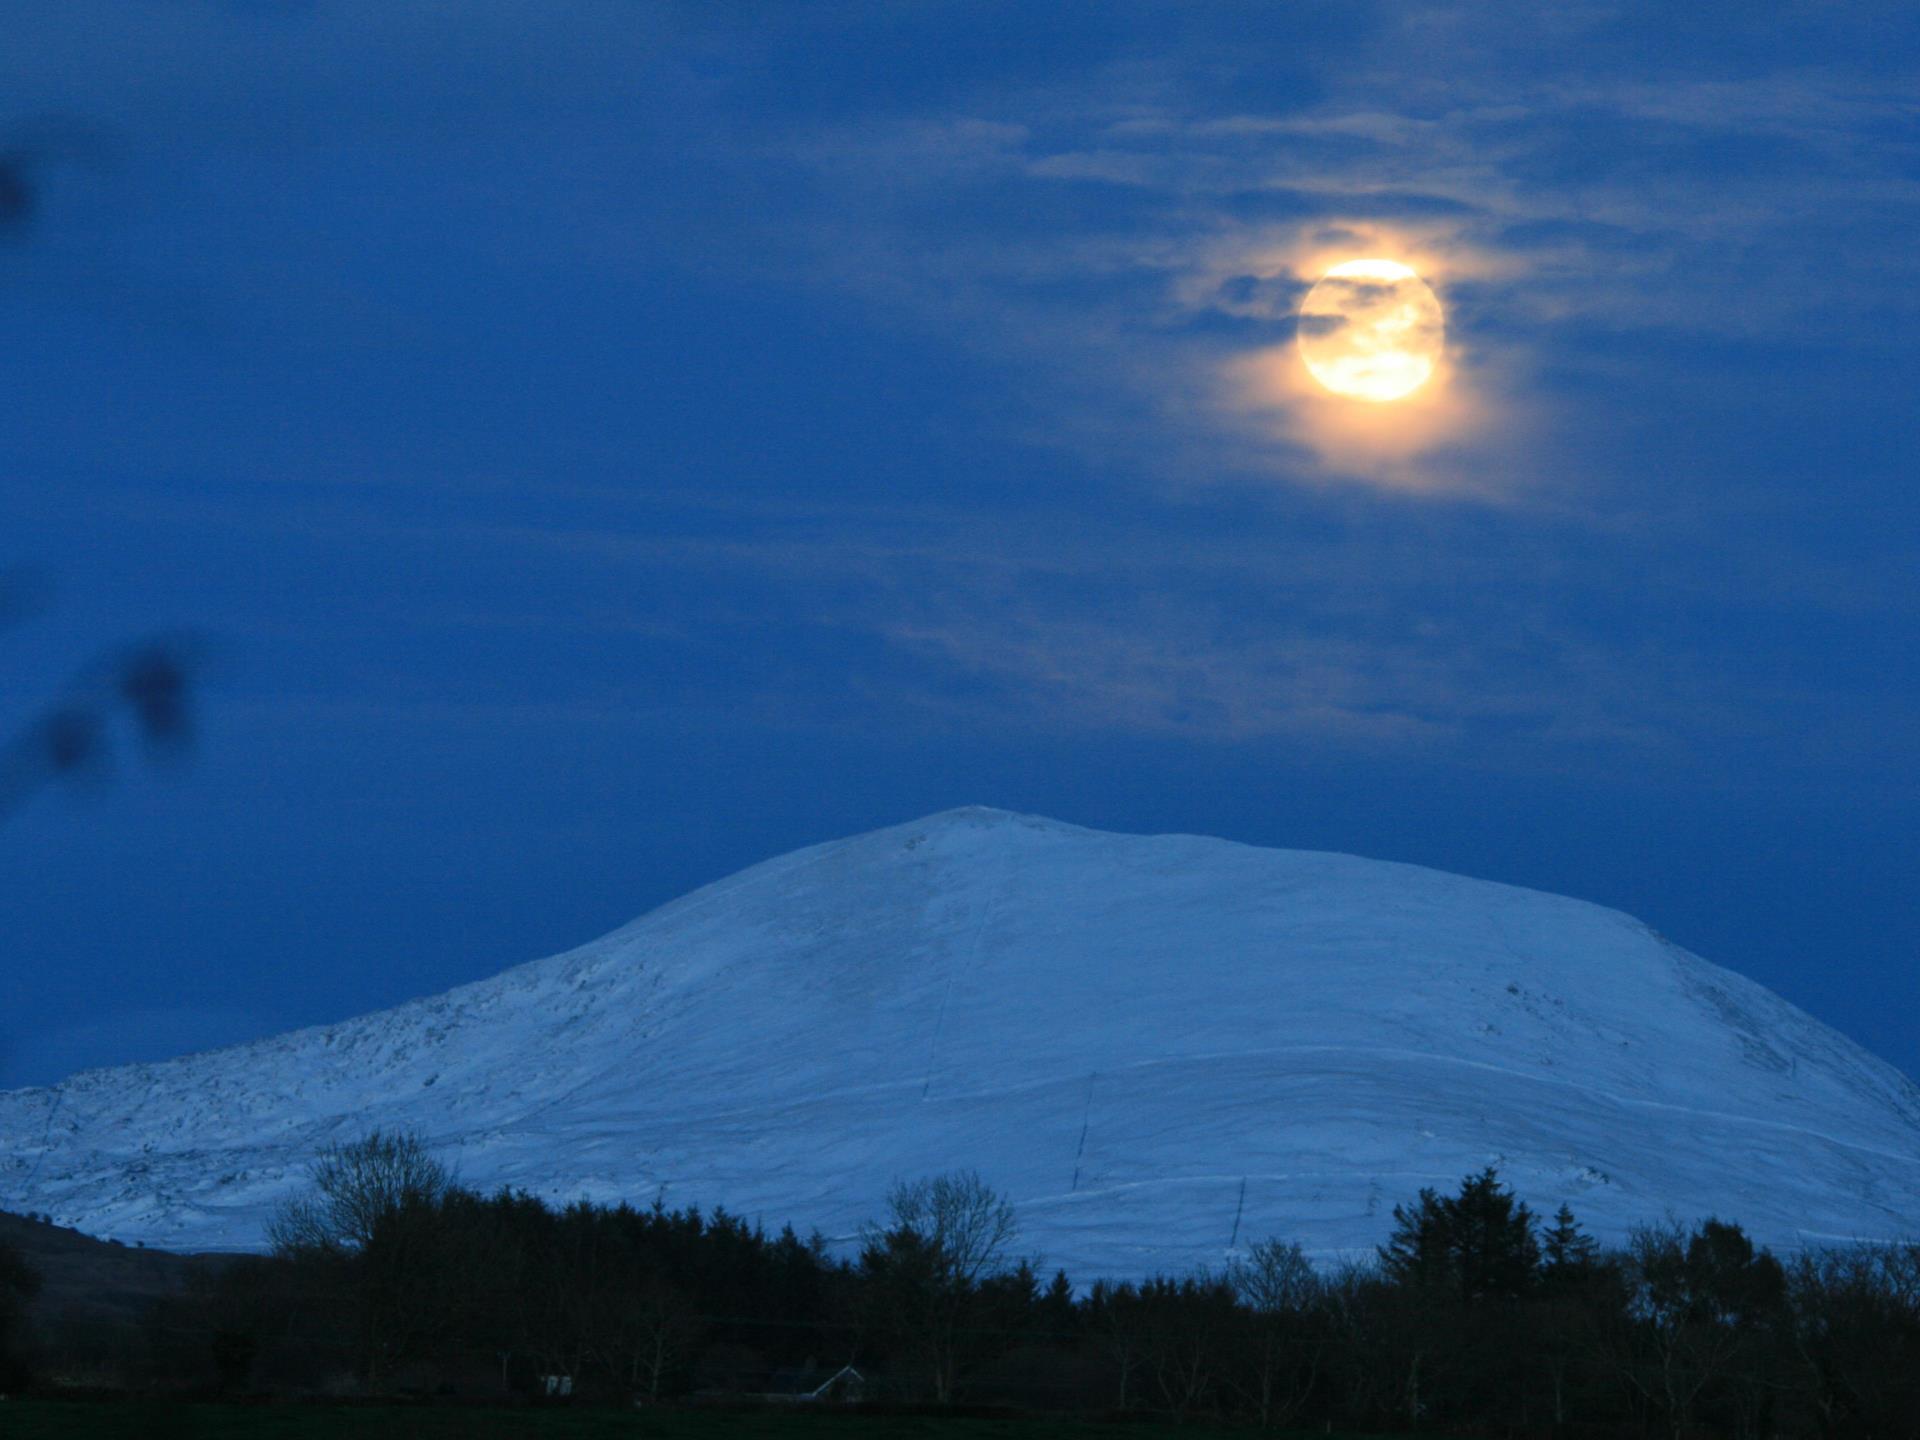 From the - Winter Moonlight overlooking Moel Hebog